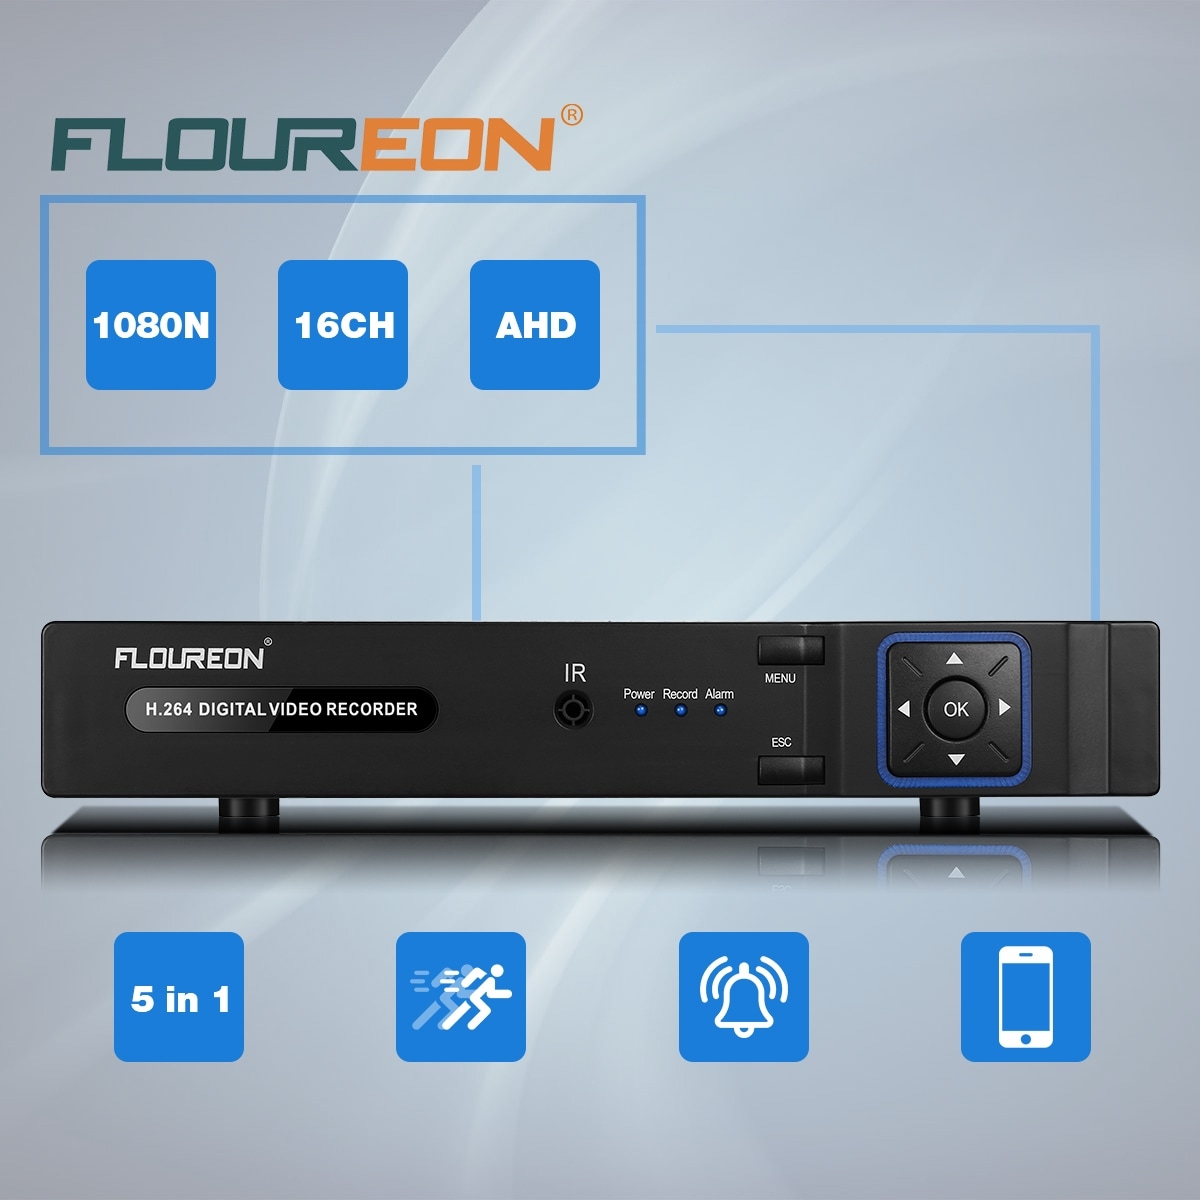 floureon remote viewing